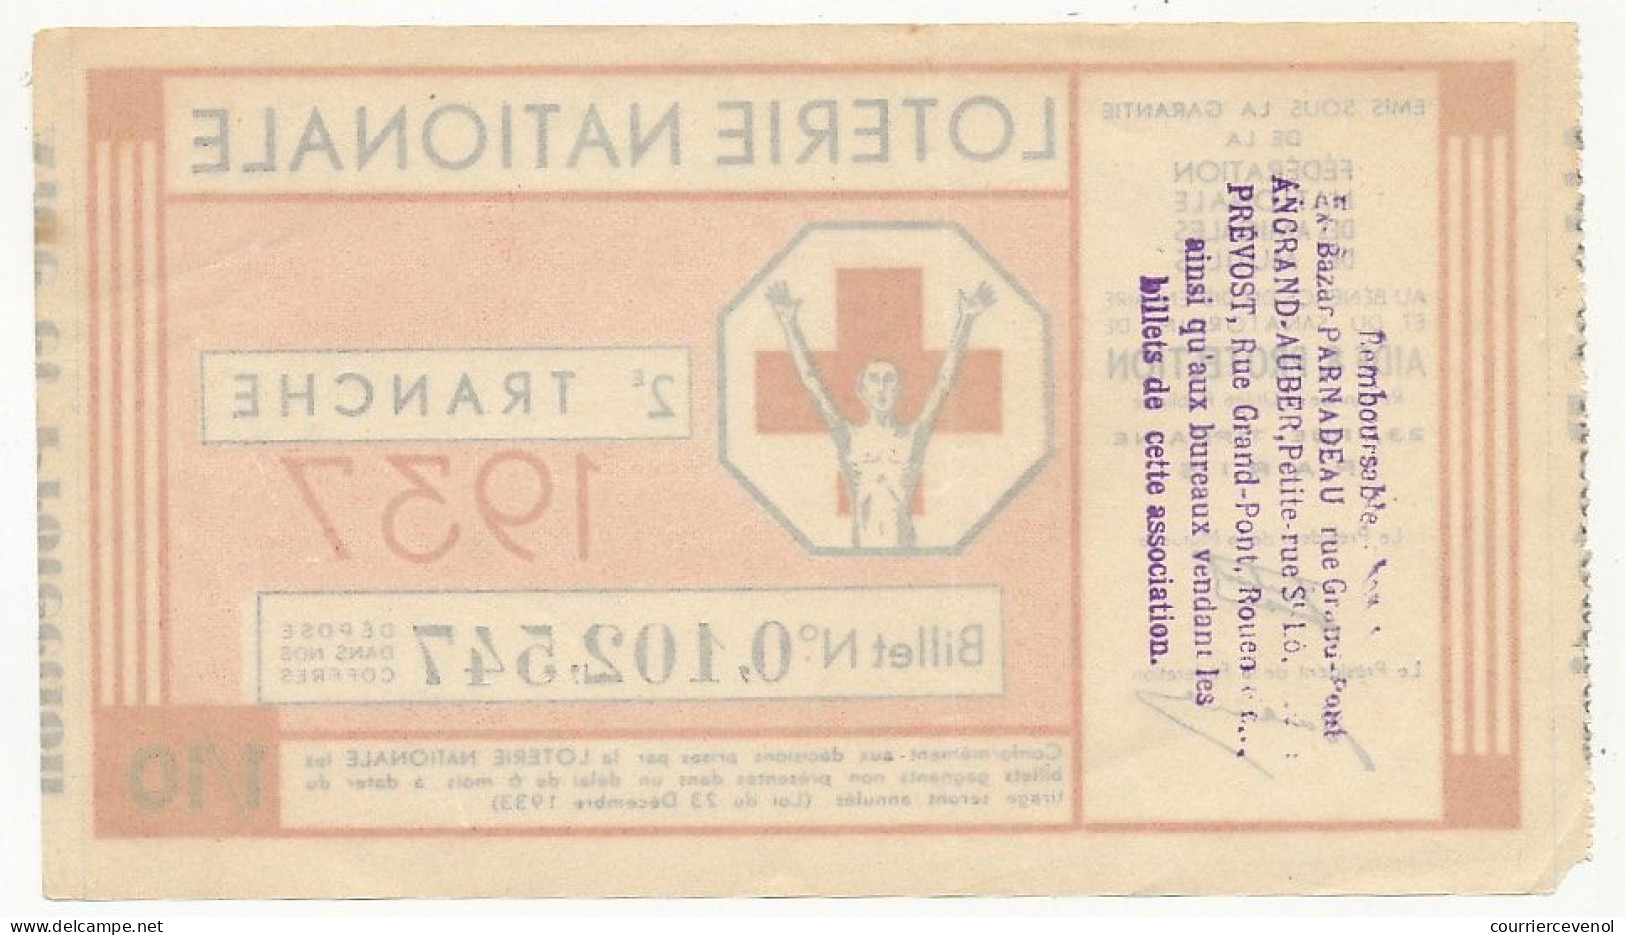 FRANCE - Loterie Nationale - Fédération Nationale Des Mutilés - 2em Tranche 1937 - 1/10ème - Billetes De Lotería